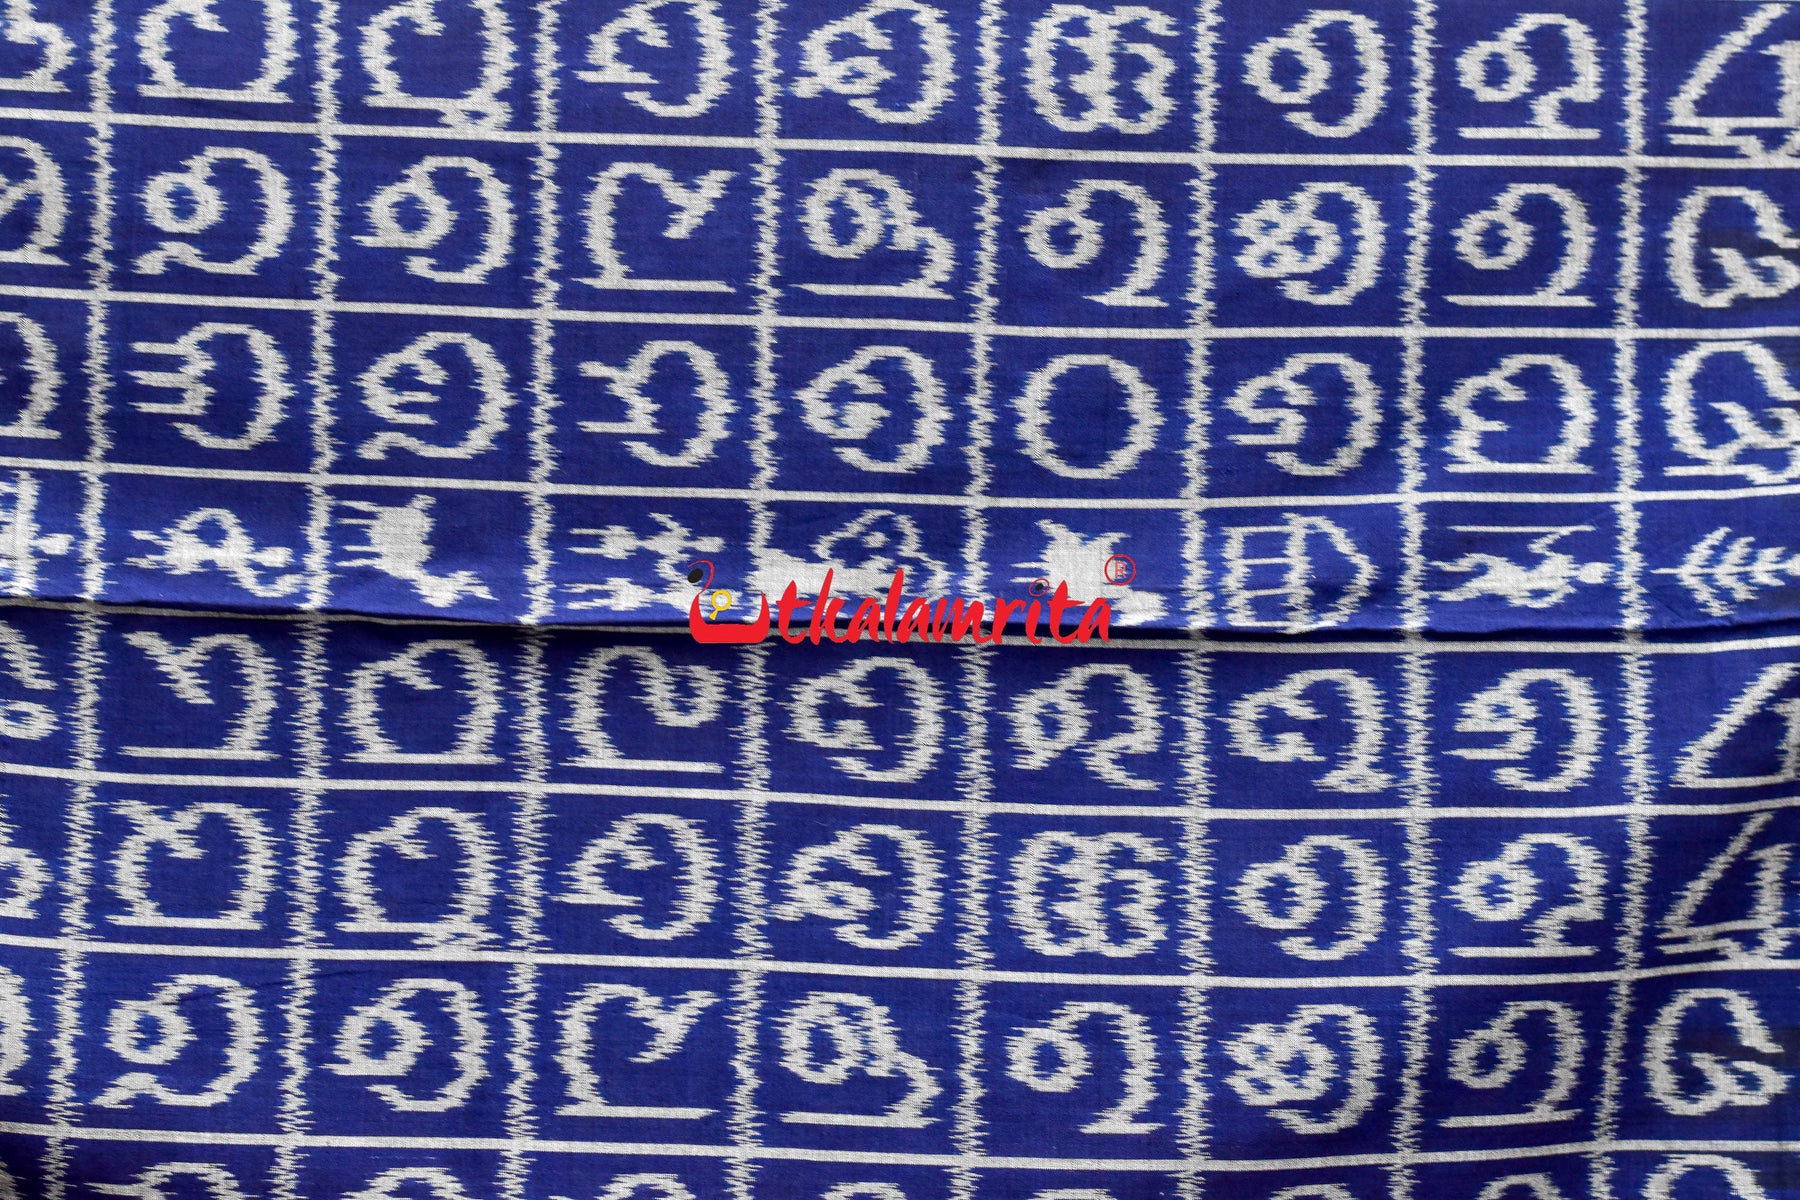 Blue Odia Alphabets Khandua Cotton Saree